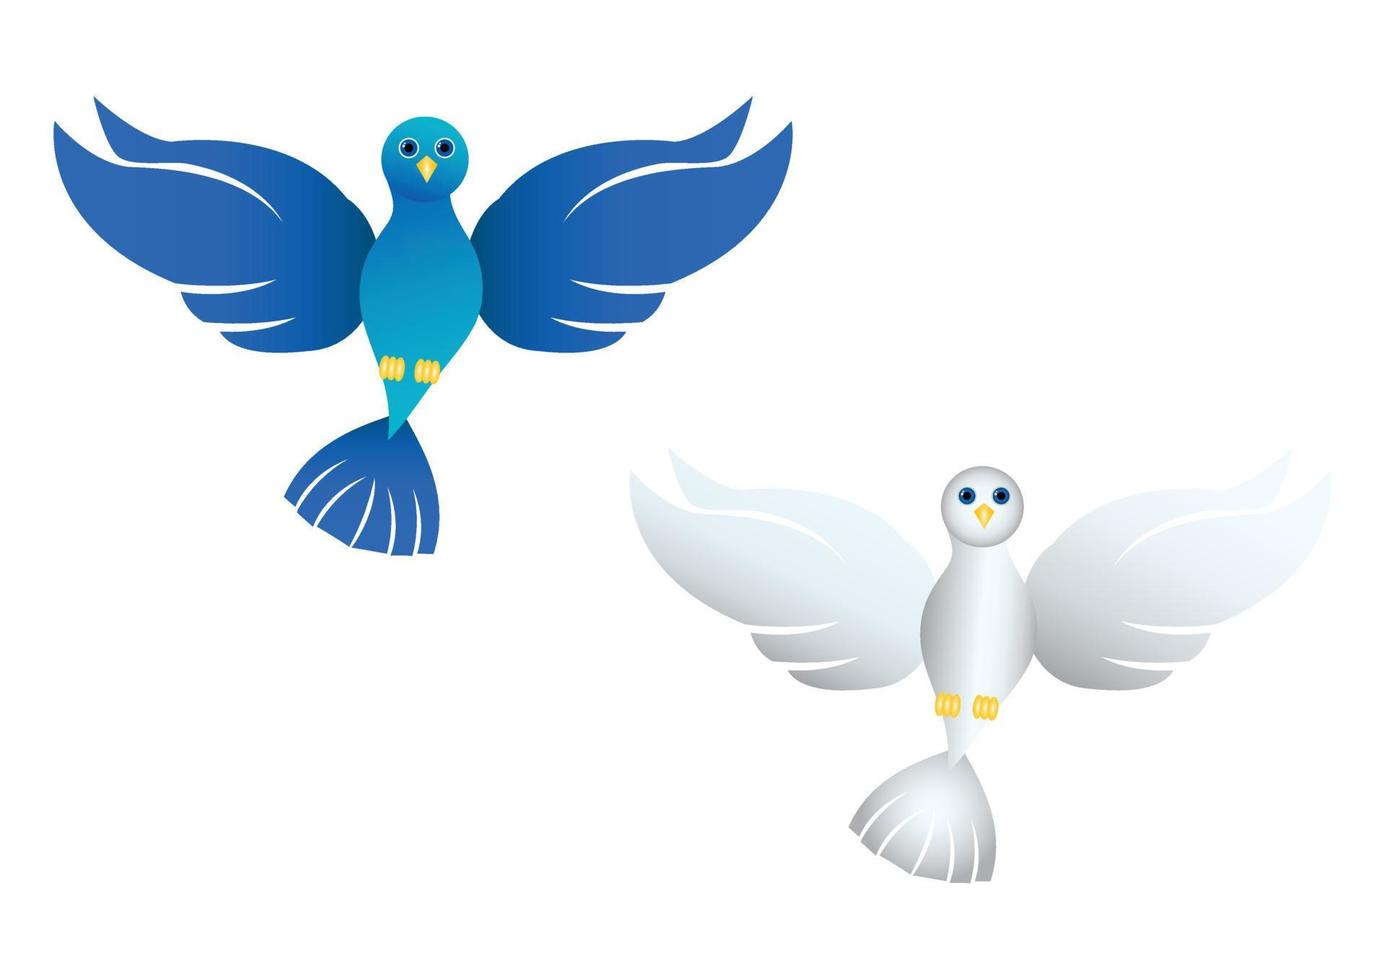 illustratie van twee verschillende kleuren van duif op een witte achtergrond. twee kleurrijke duiven. blauwe en witte duiven. vector duif